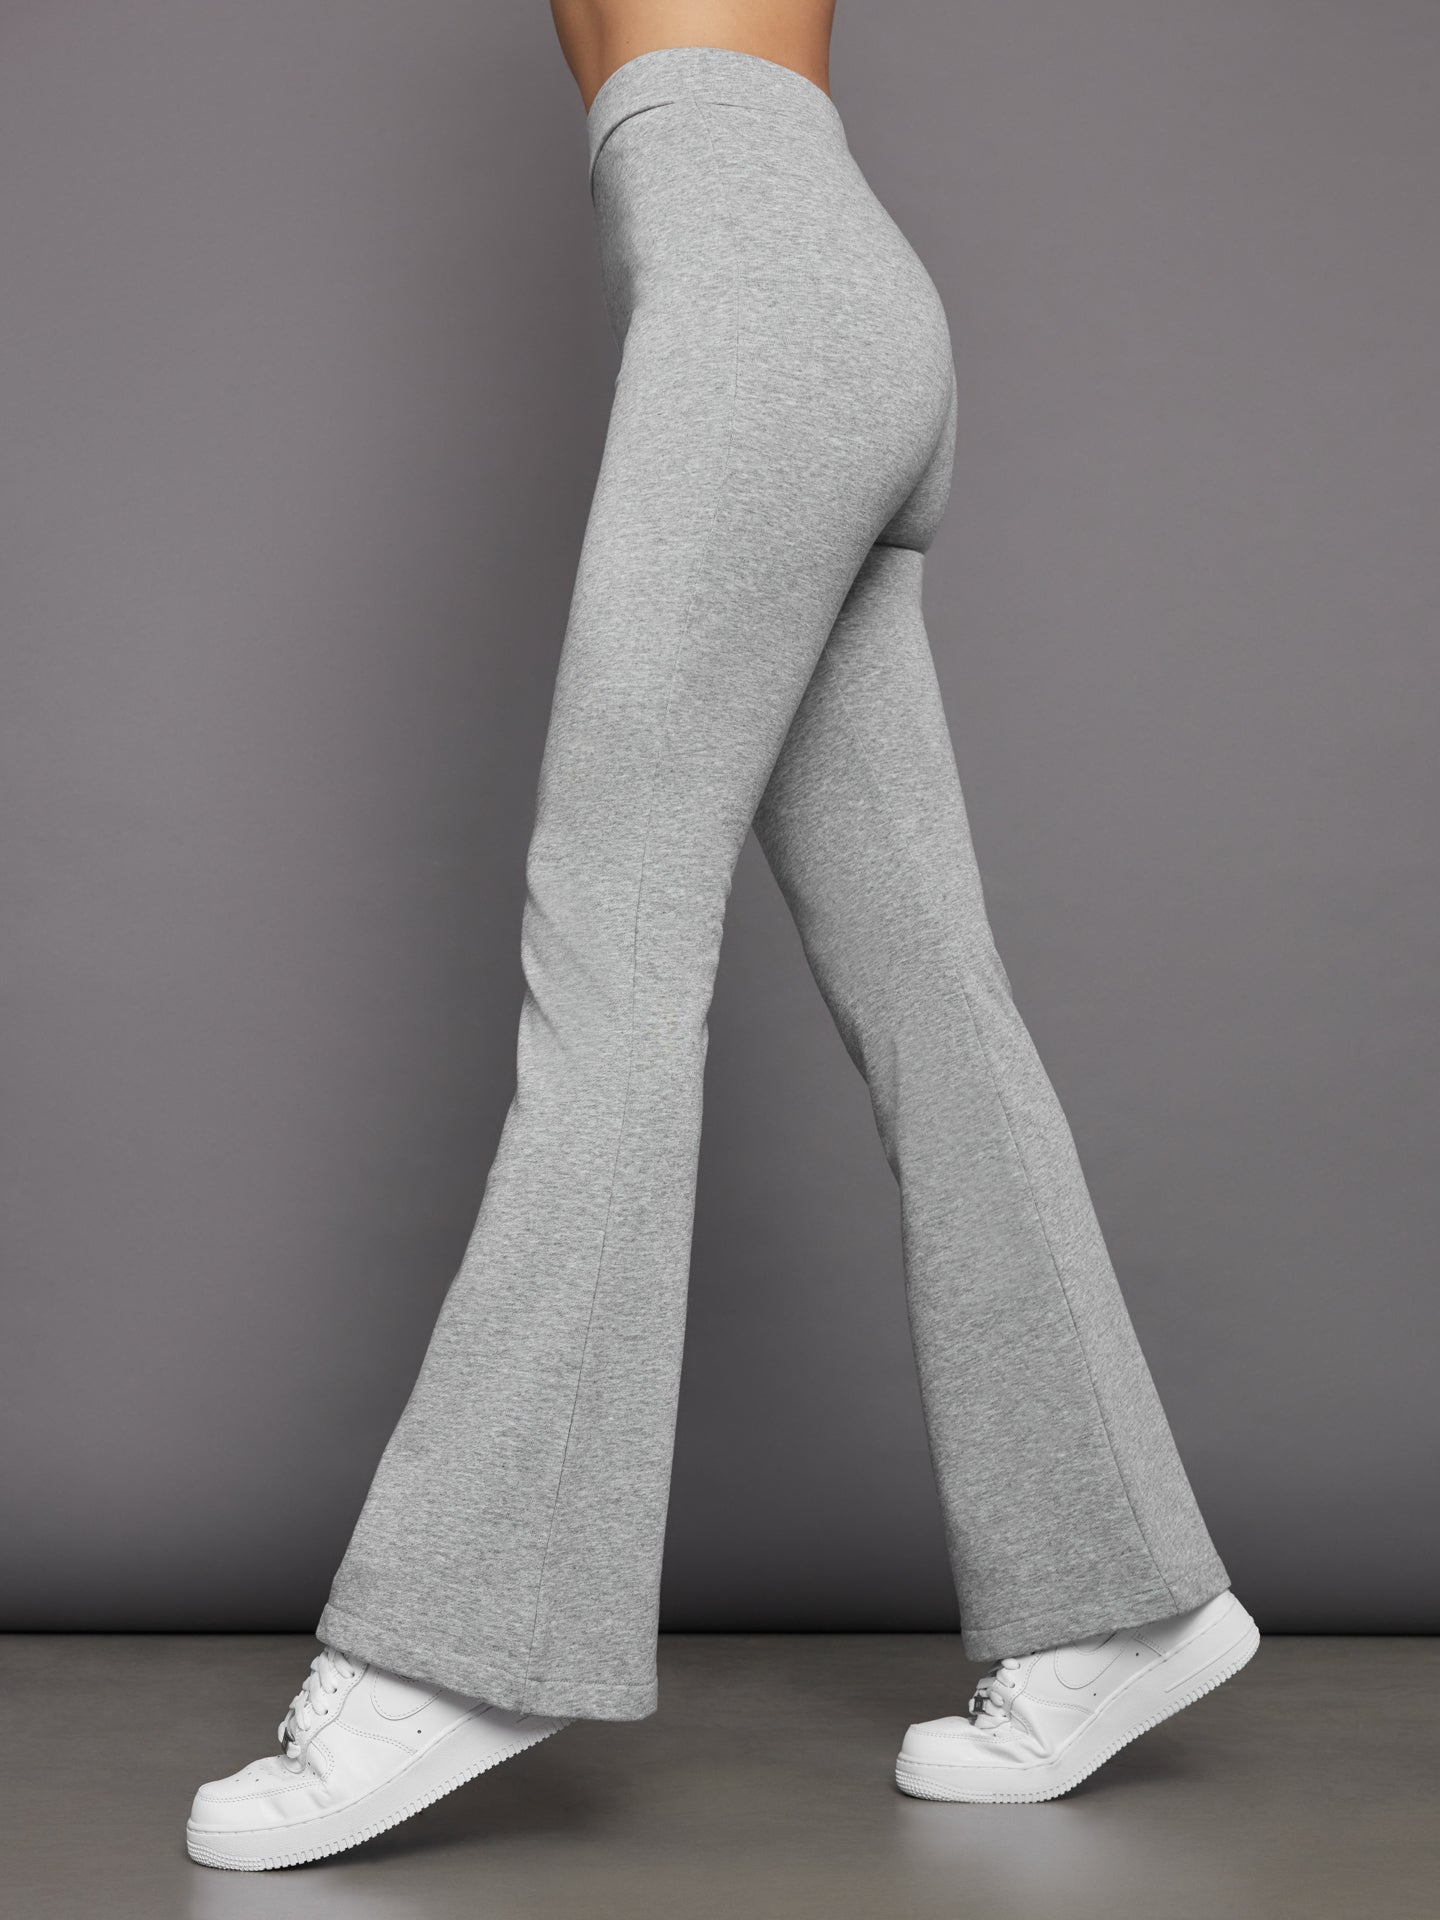 Scuba Trouser Pant - Heather Grey – Carbon38